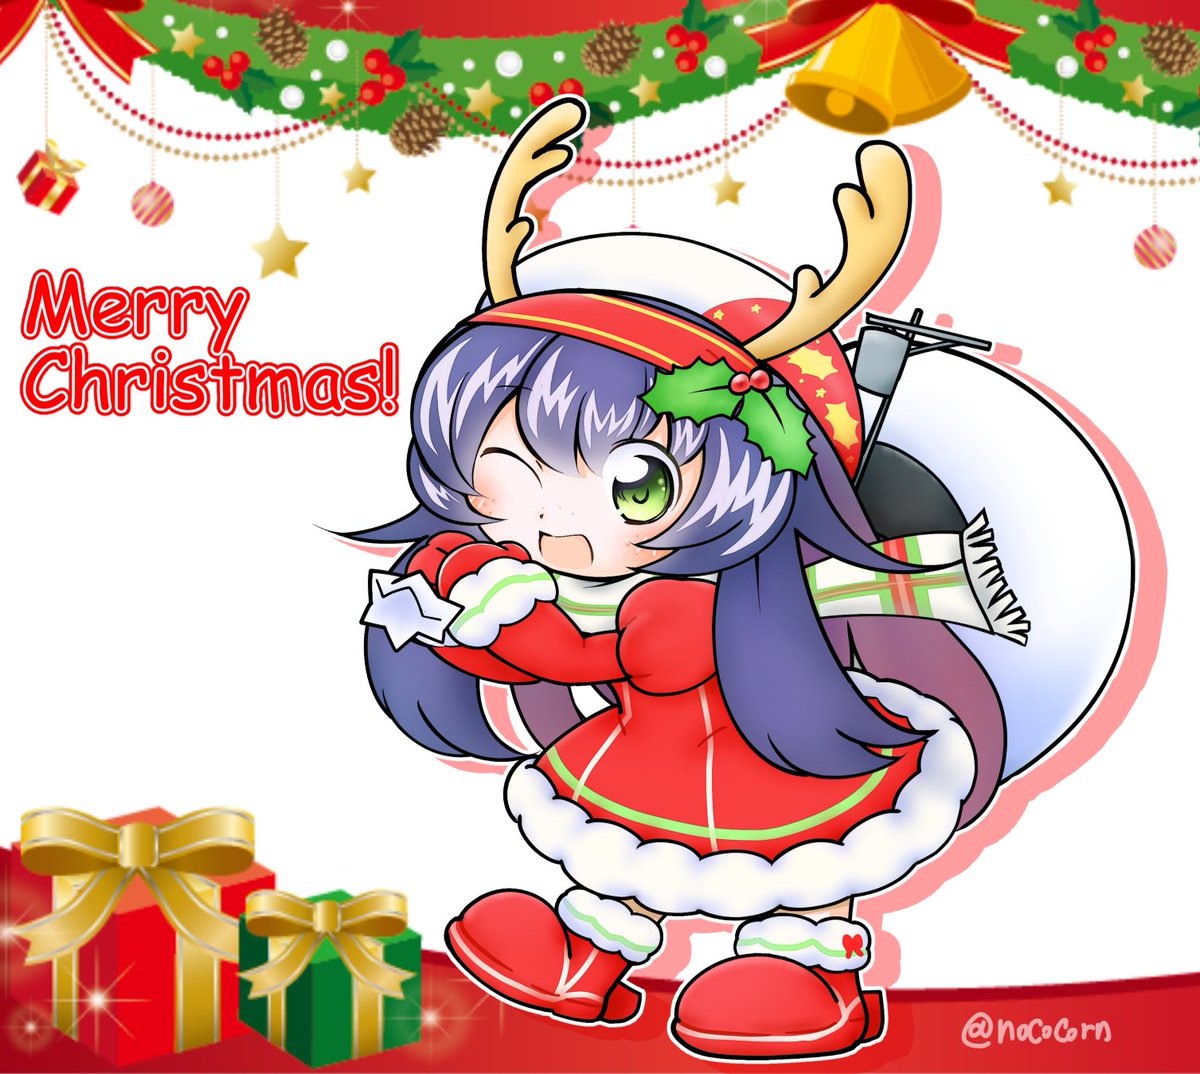 クリスマス☆キタコレ!!!!
#艦これ #MerryChristmas2020 